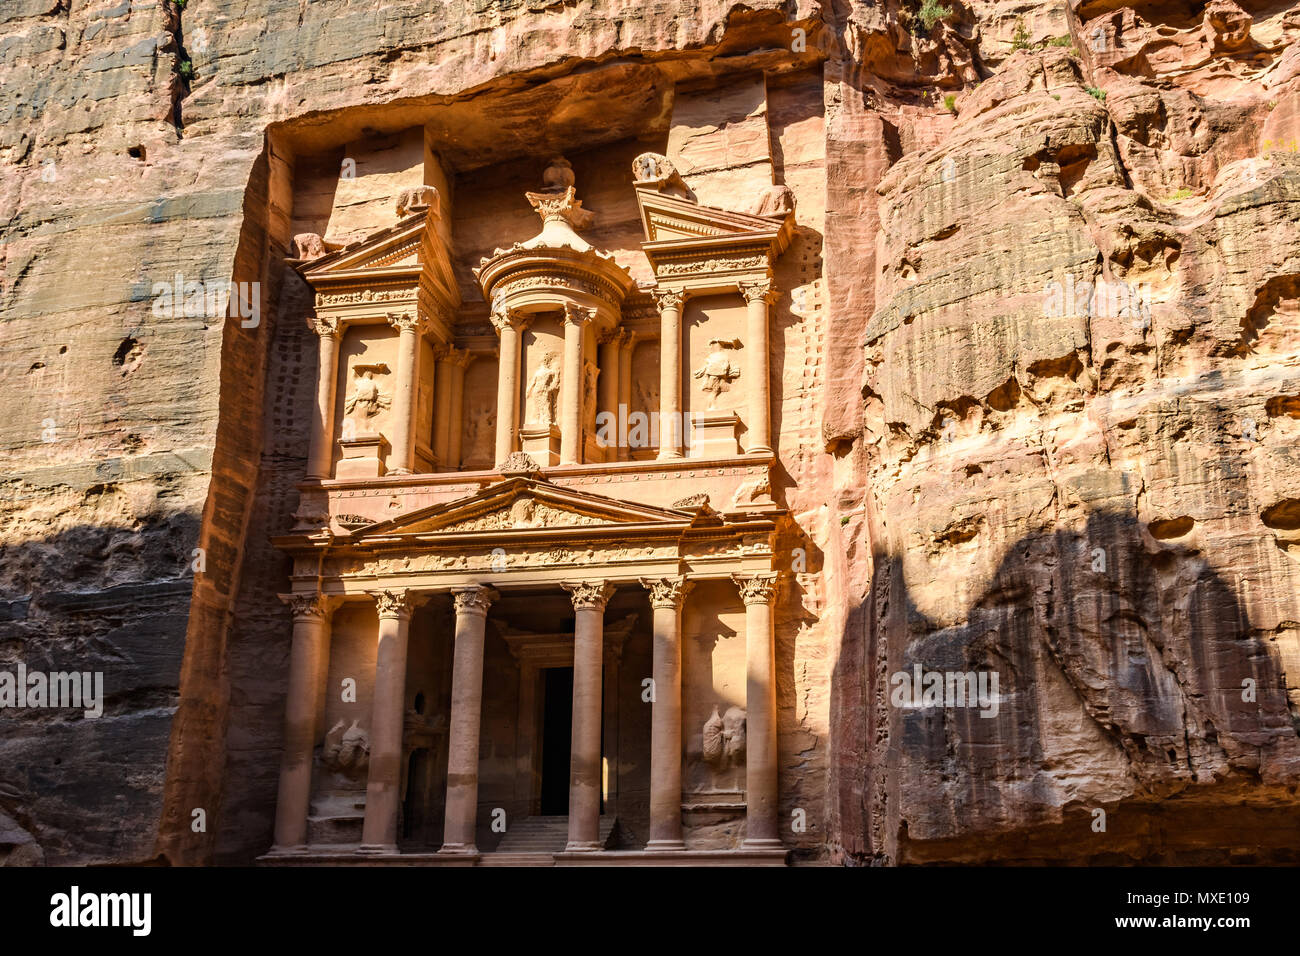 El tesoro al amanecer en la ciudad perdida de Petra, Jordania Foto de stock